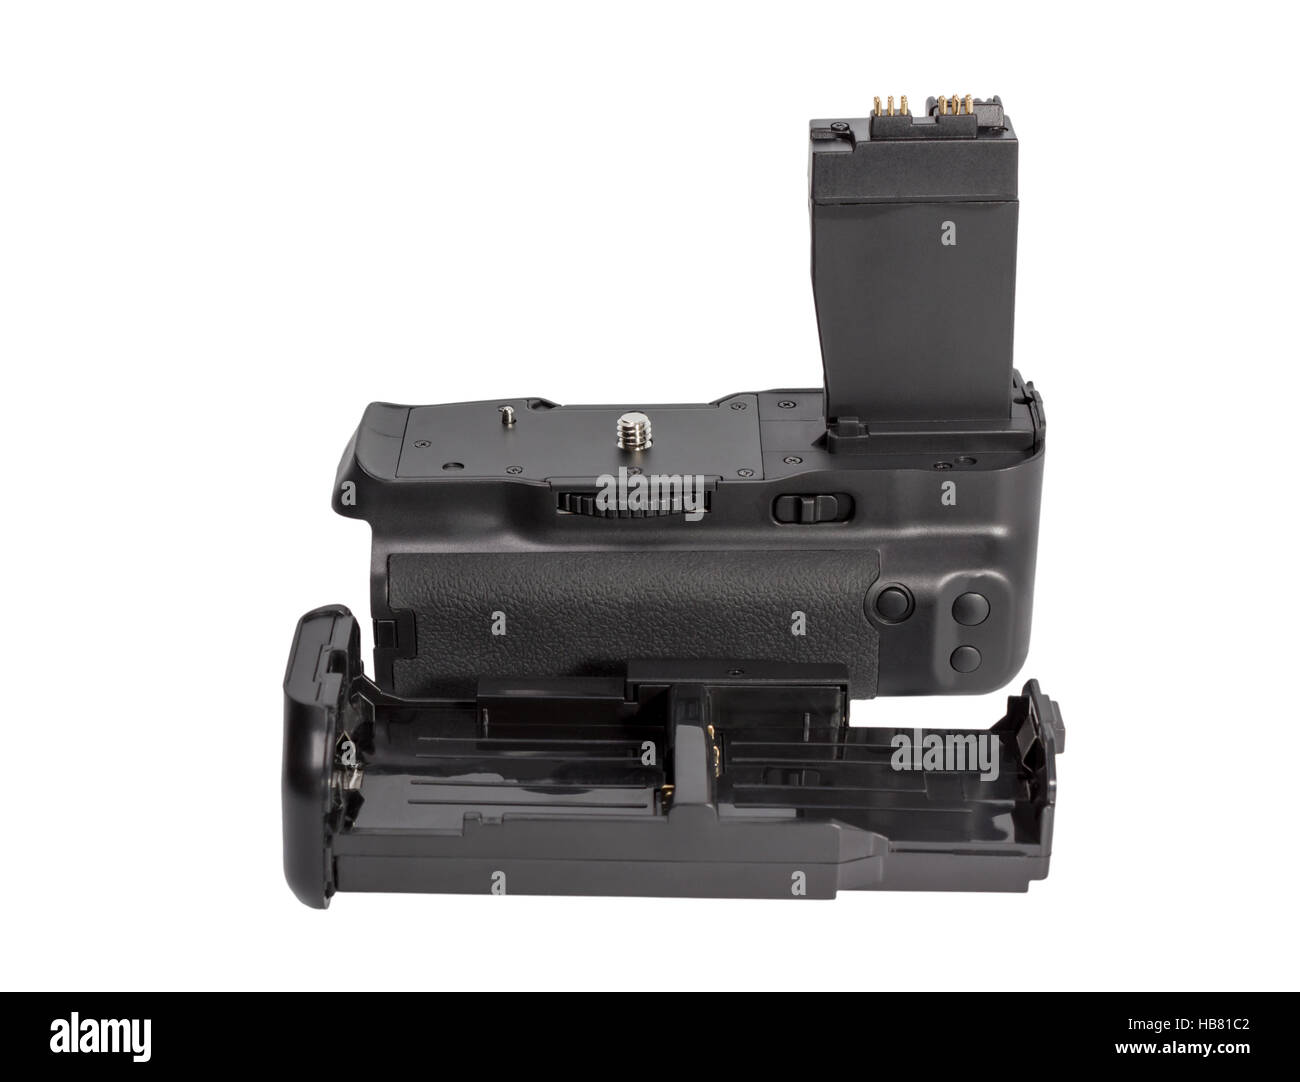 Battery grip for modern DSLR camera Stock Photo